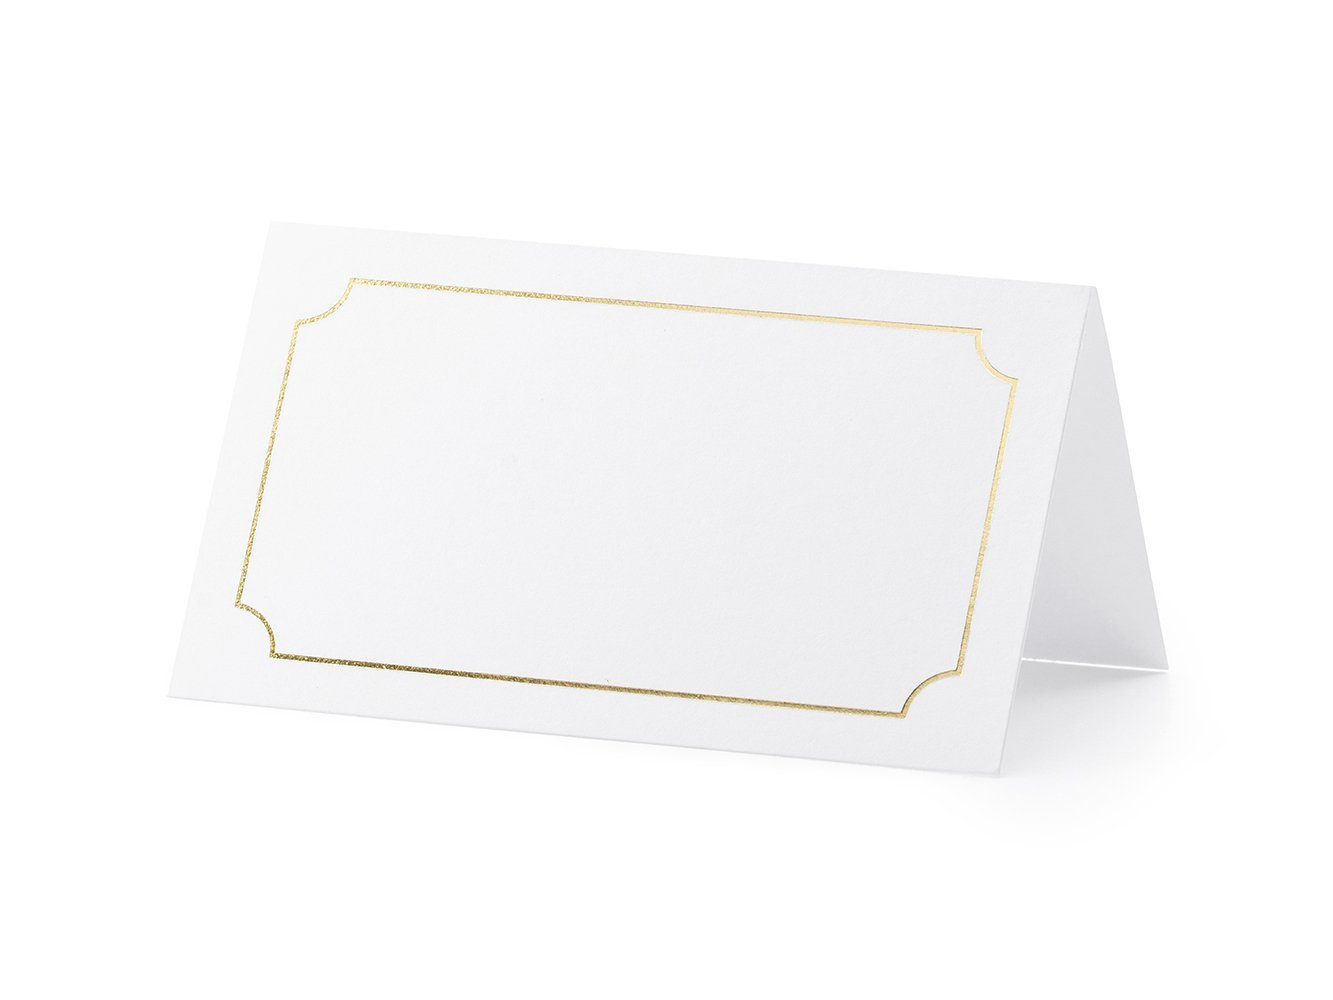 Stück gold 10 9,5x5,5cm Tischkarten weiß blanko partydeco Rahmen Papierdekoration,